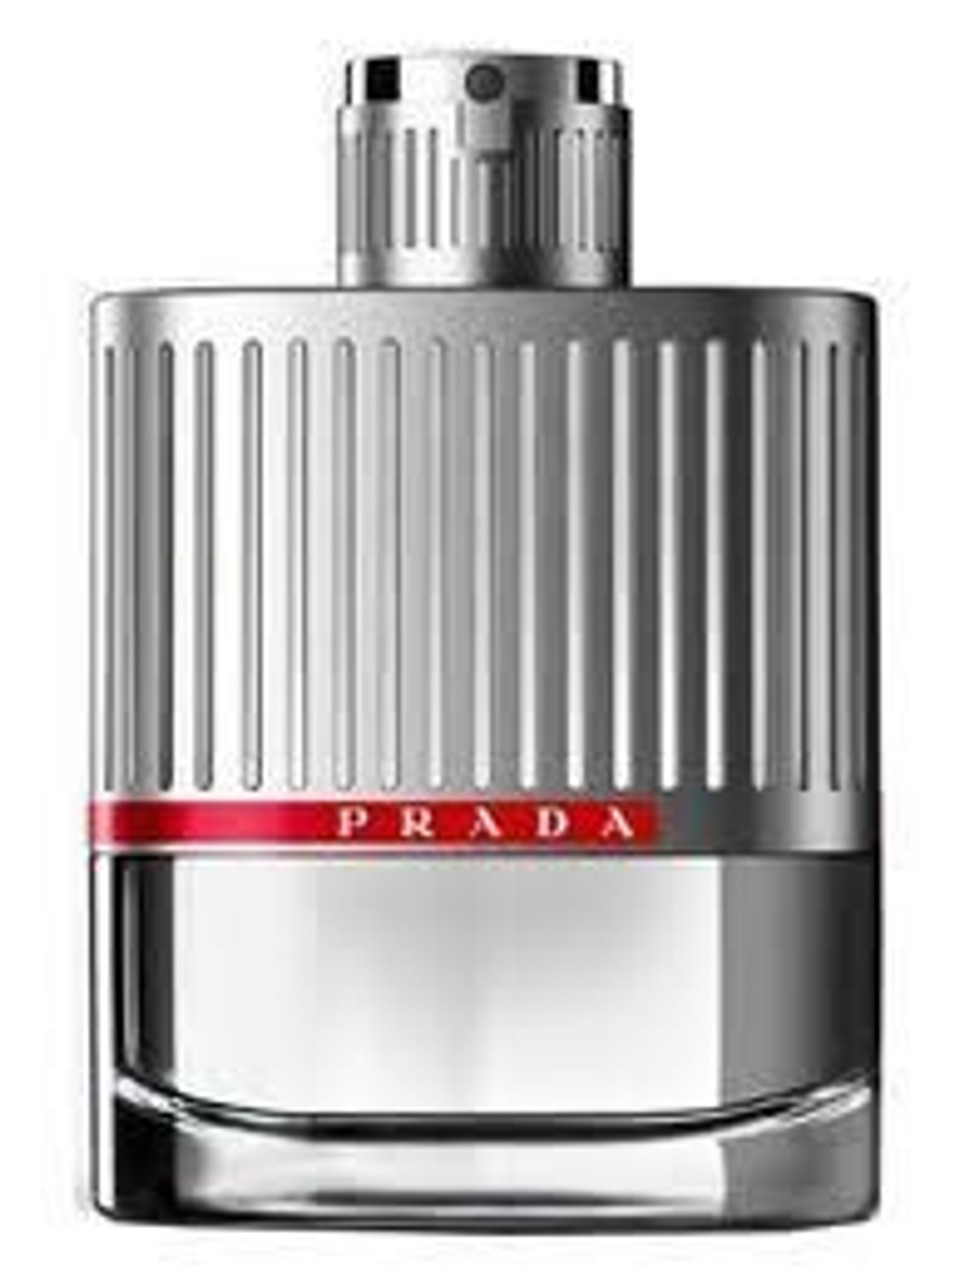 Prada Luna Rossa Cologne 5.0 oz Eau de Toilette Spray